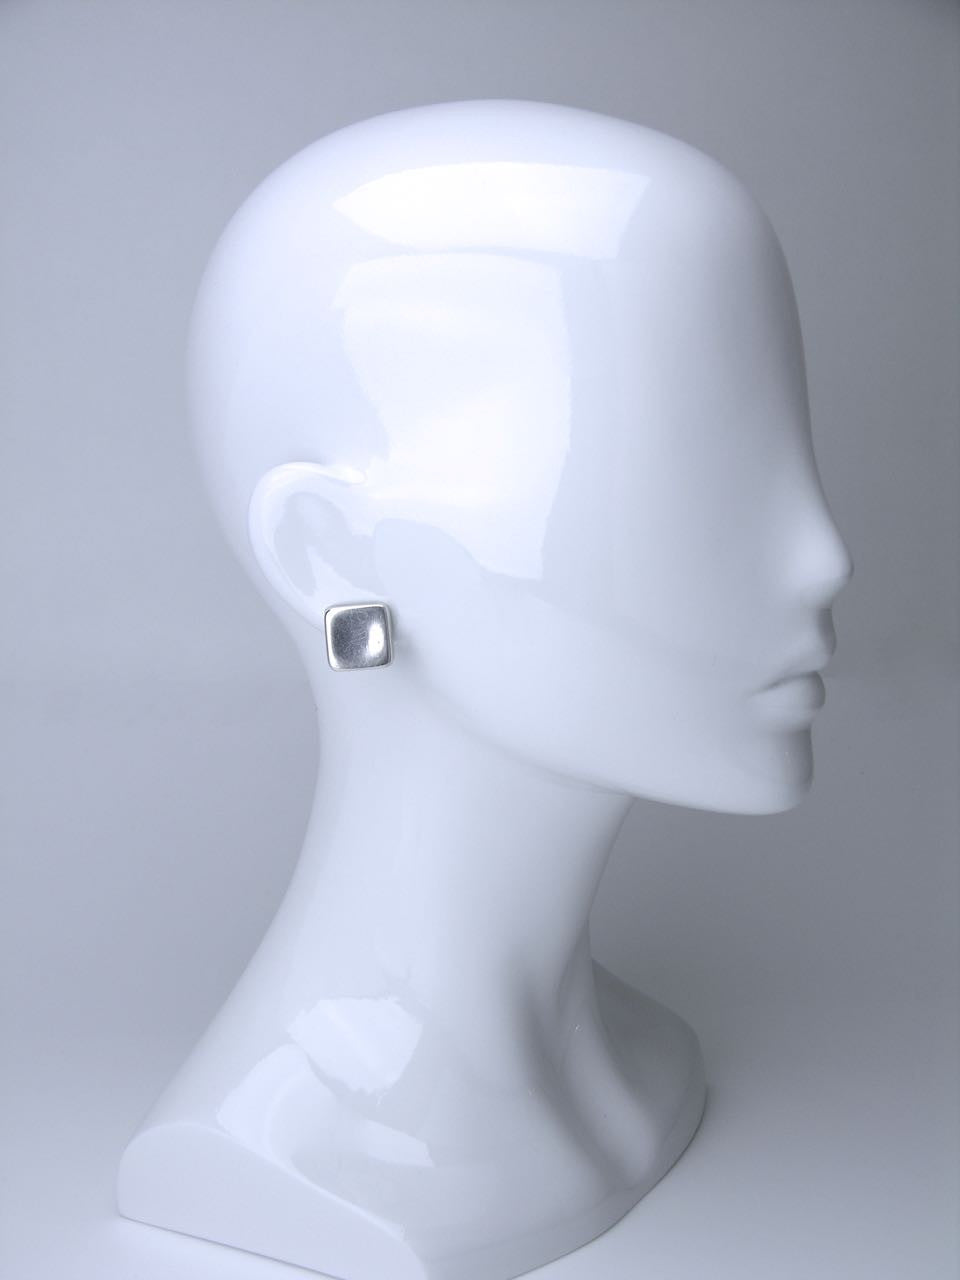 Georg Jensen square clip earrings - design number 191